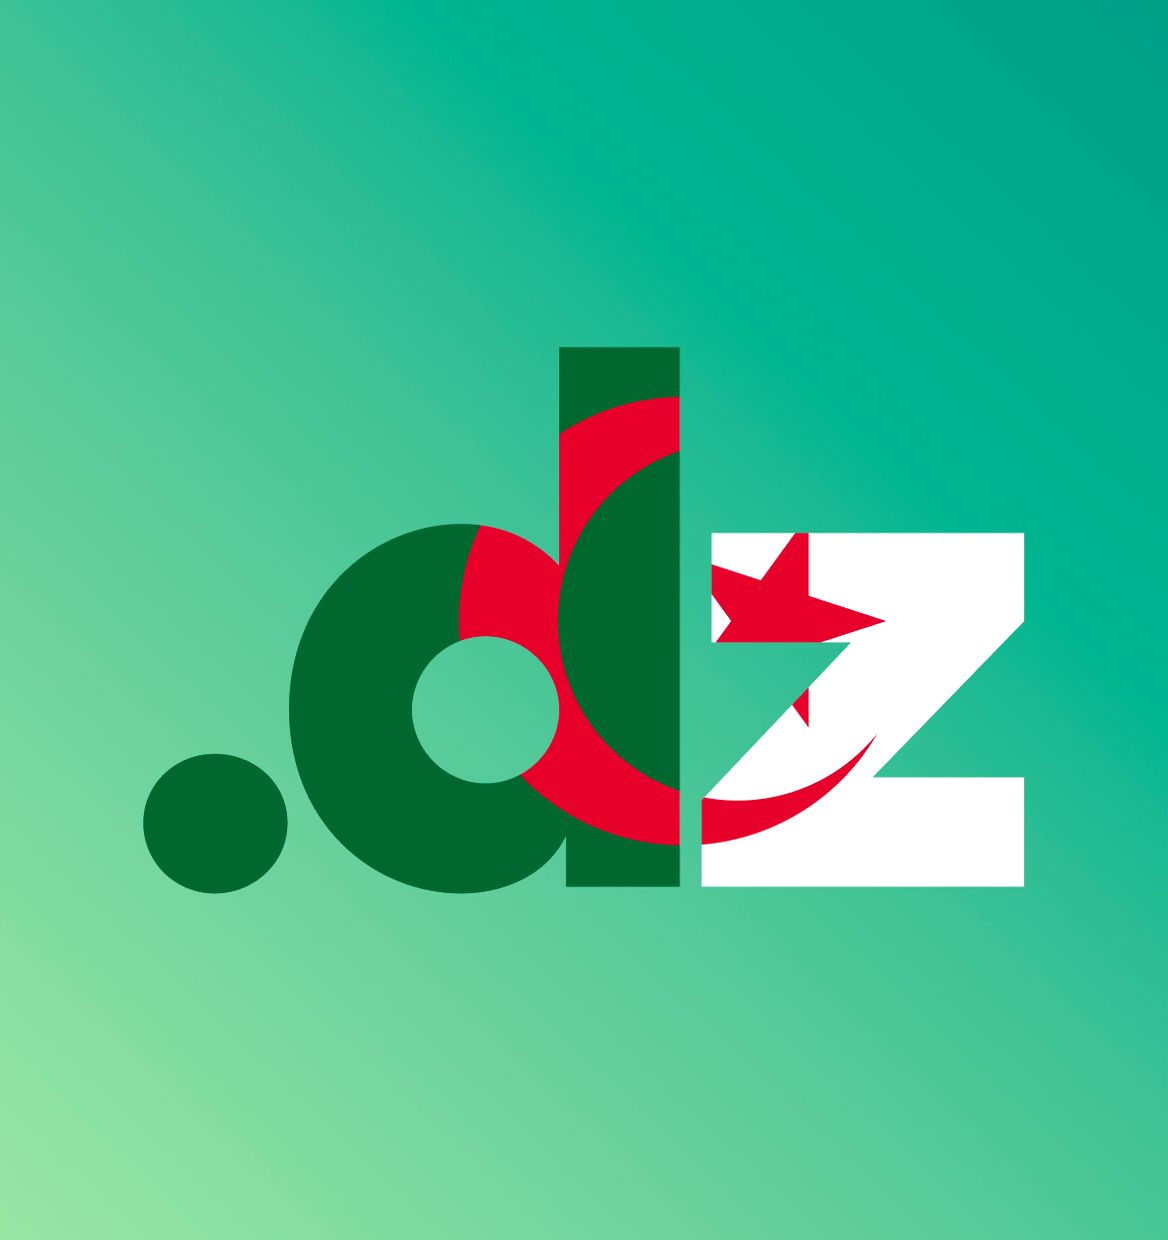 Le domaine .dz incarne l’identité numérique de l’Algérie sur la toile, il confère une importance stratégique aux institutions, entreprises et organisations souhaitant affirmer leur présence en ligne sous les couleurs de l’Algérie.